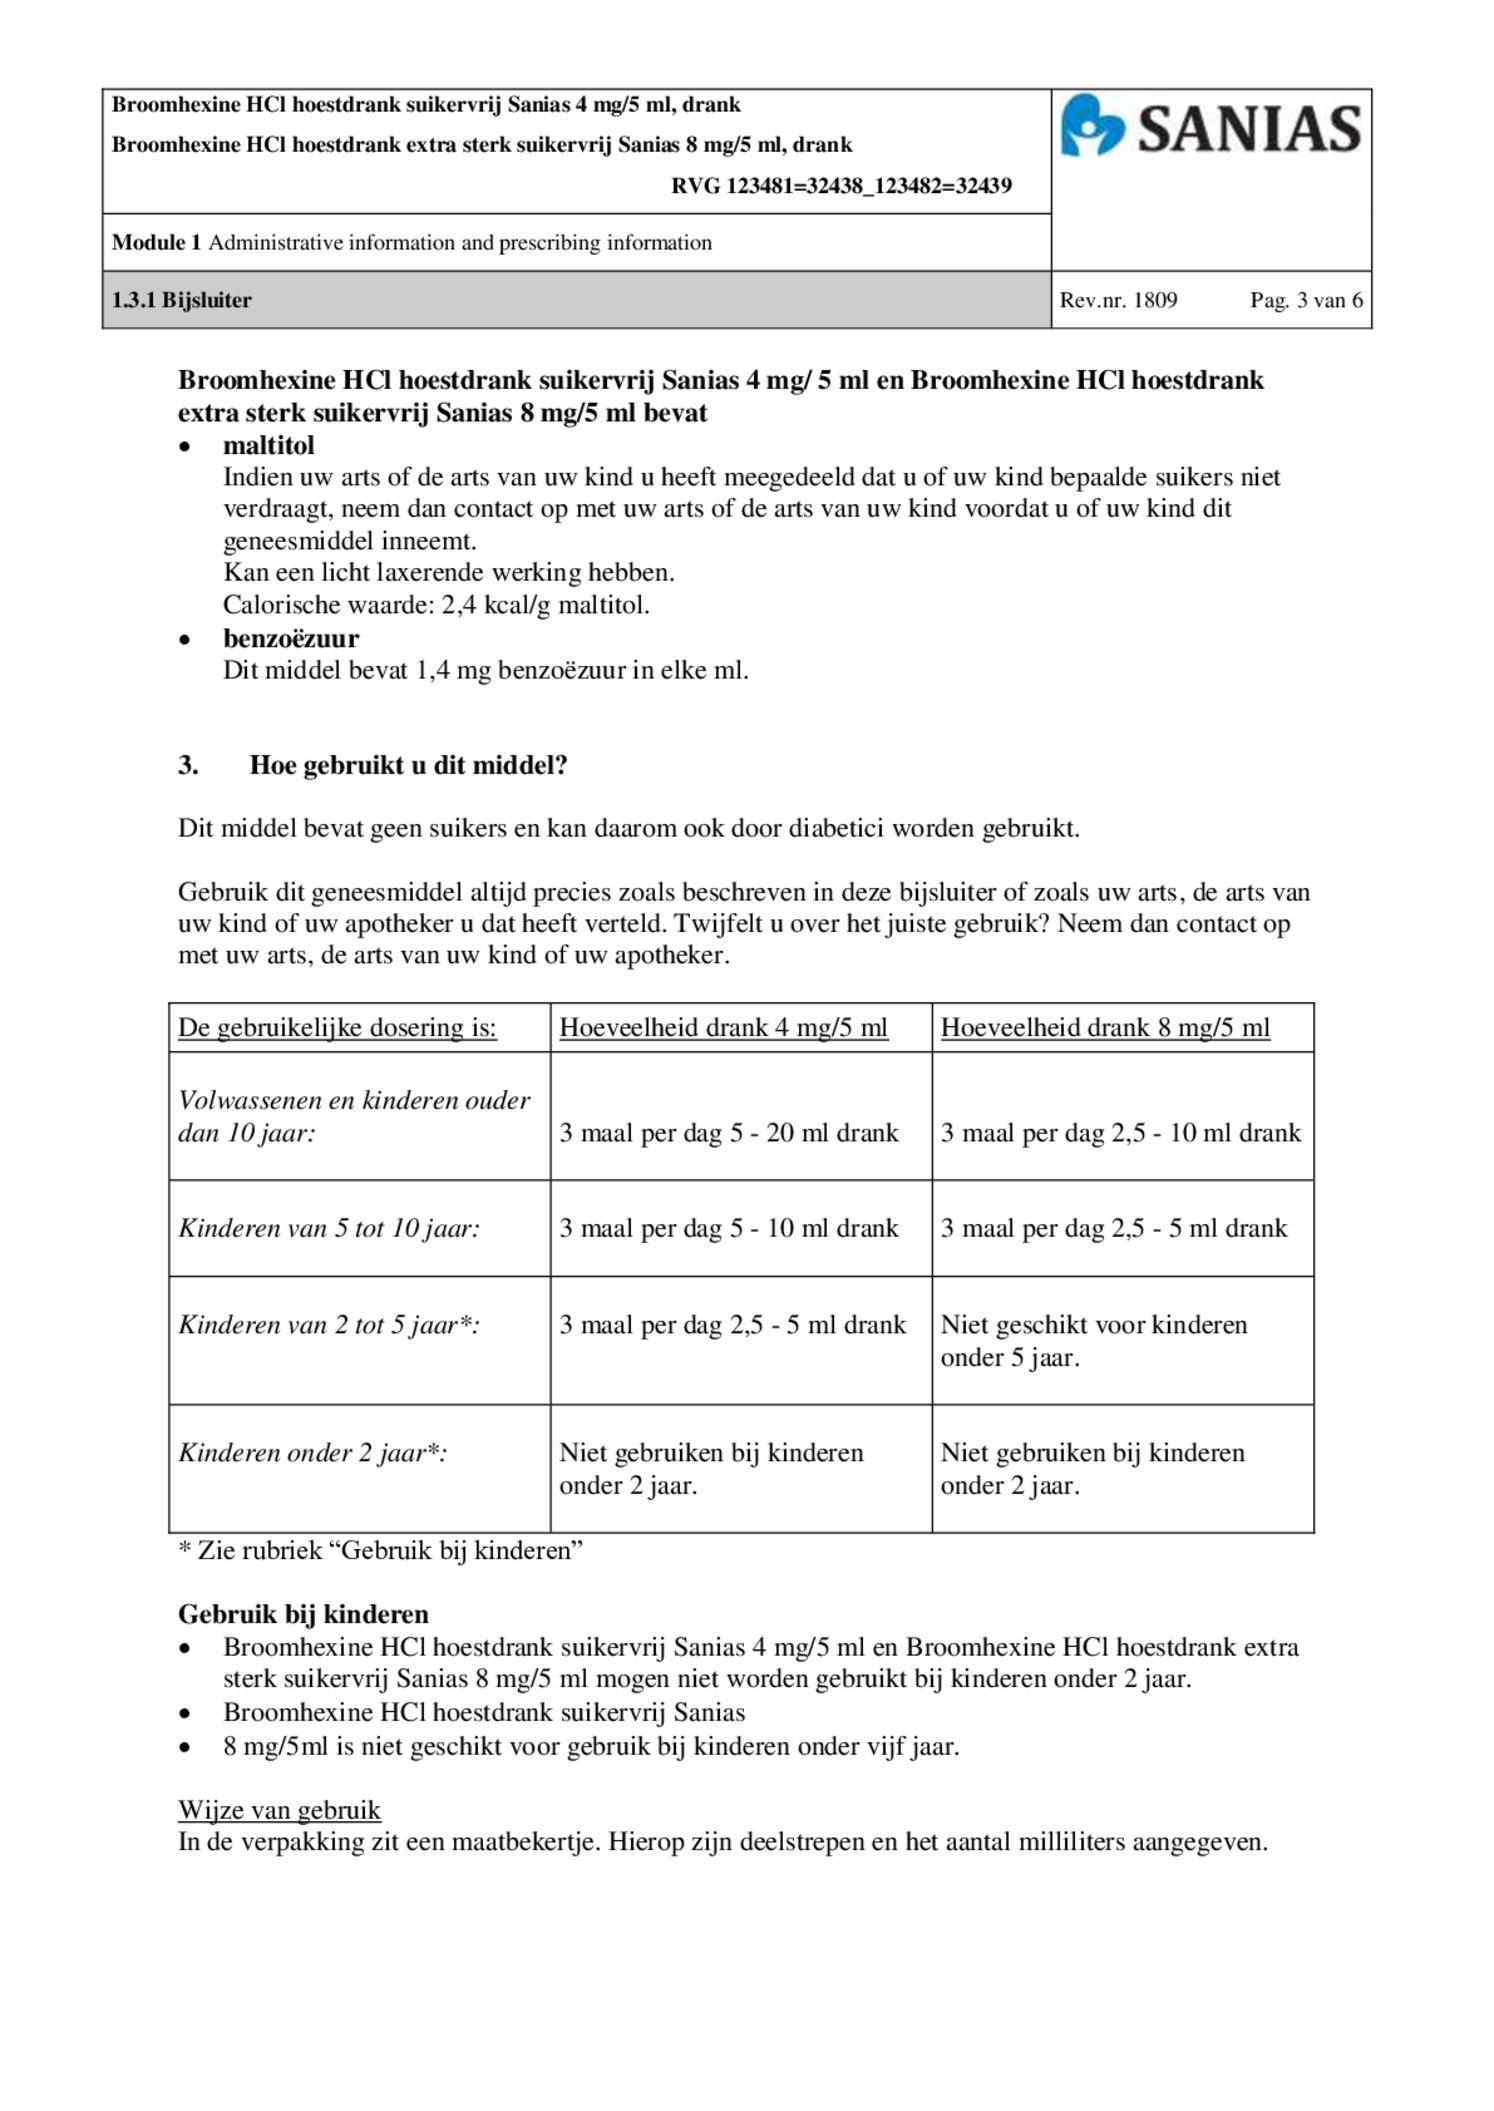 Broomhexine HCl Hoestdrank Extra Sterk Suikervrij 8mg/5ml afbeelding van document #3, bijsluiter